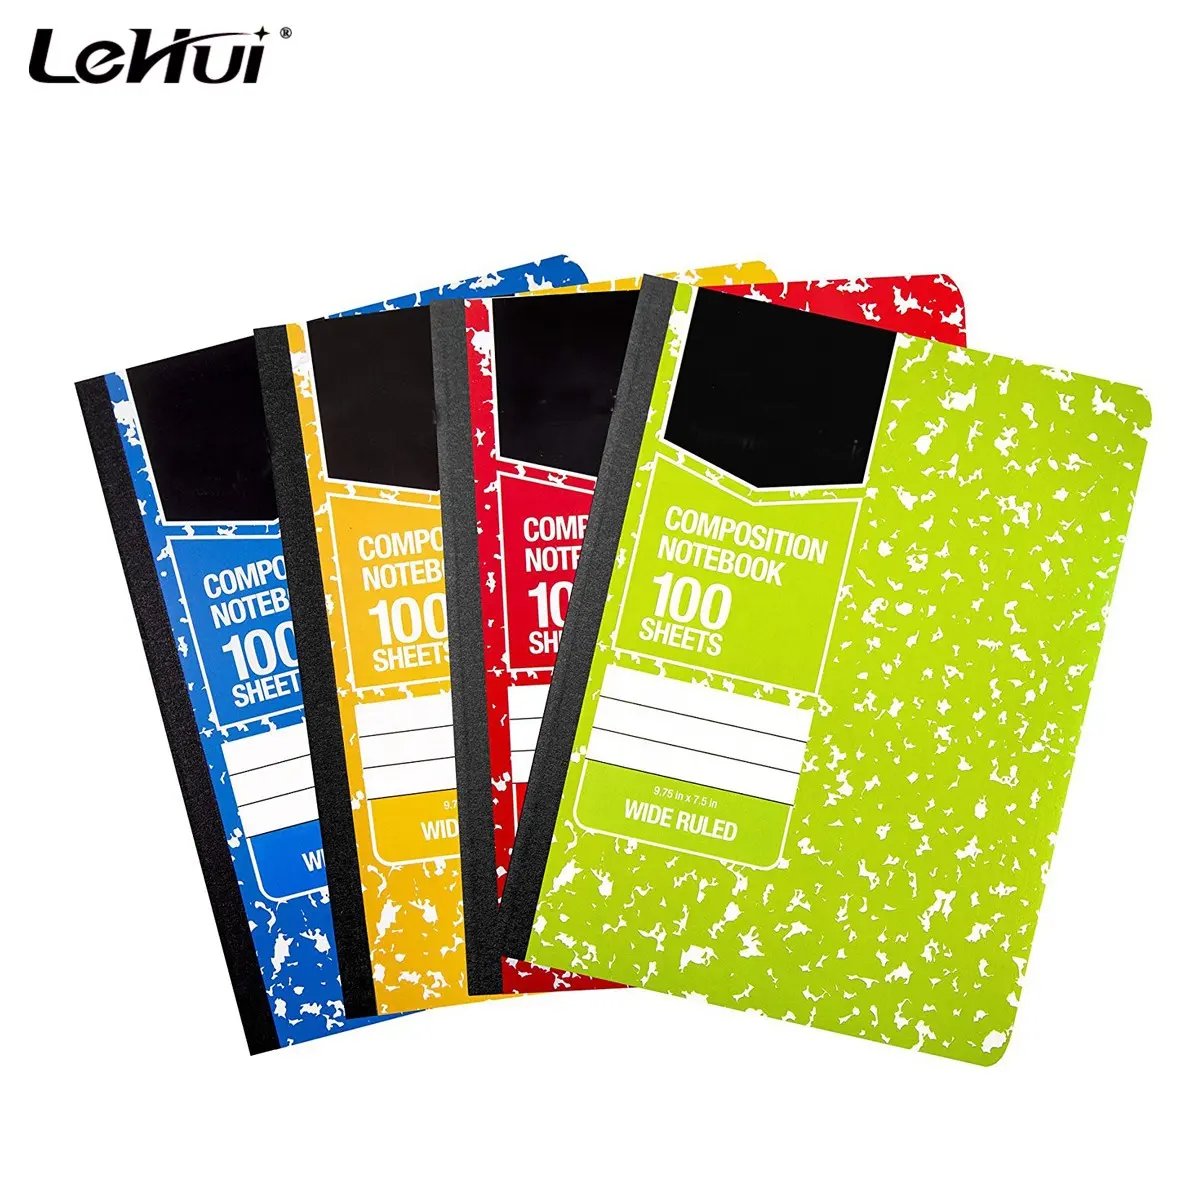 Shanghai Lehui100 Foglio Assortiti Marmo Colori 4Packs Nozioni di Base Larga Composizione Governato Notebook per 56 gsm peso di carta magazzino